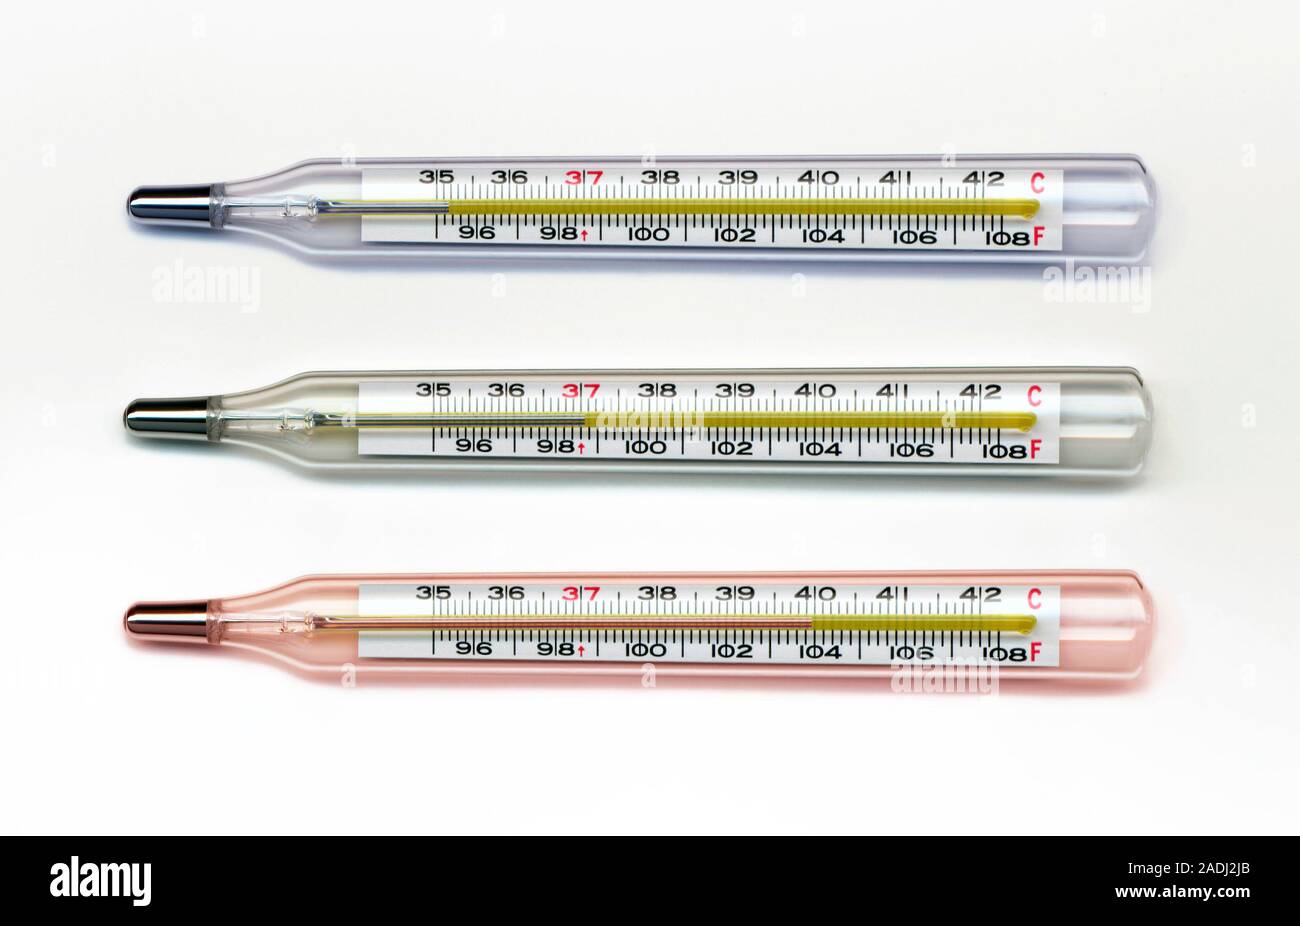 Termómetros. Tres termómetros clínicos cada uno con una escala en grados  Celsius y Fahrenheit. Cada termómetro muestra una temperatura diferente rea  Fotografía de stock - Alamy